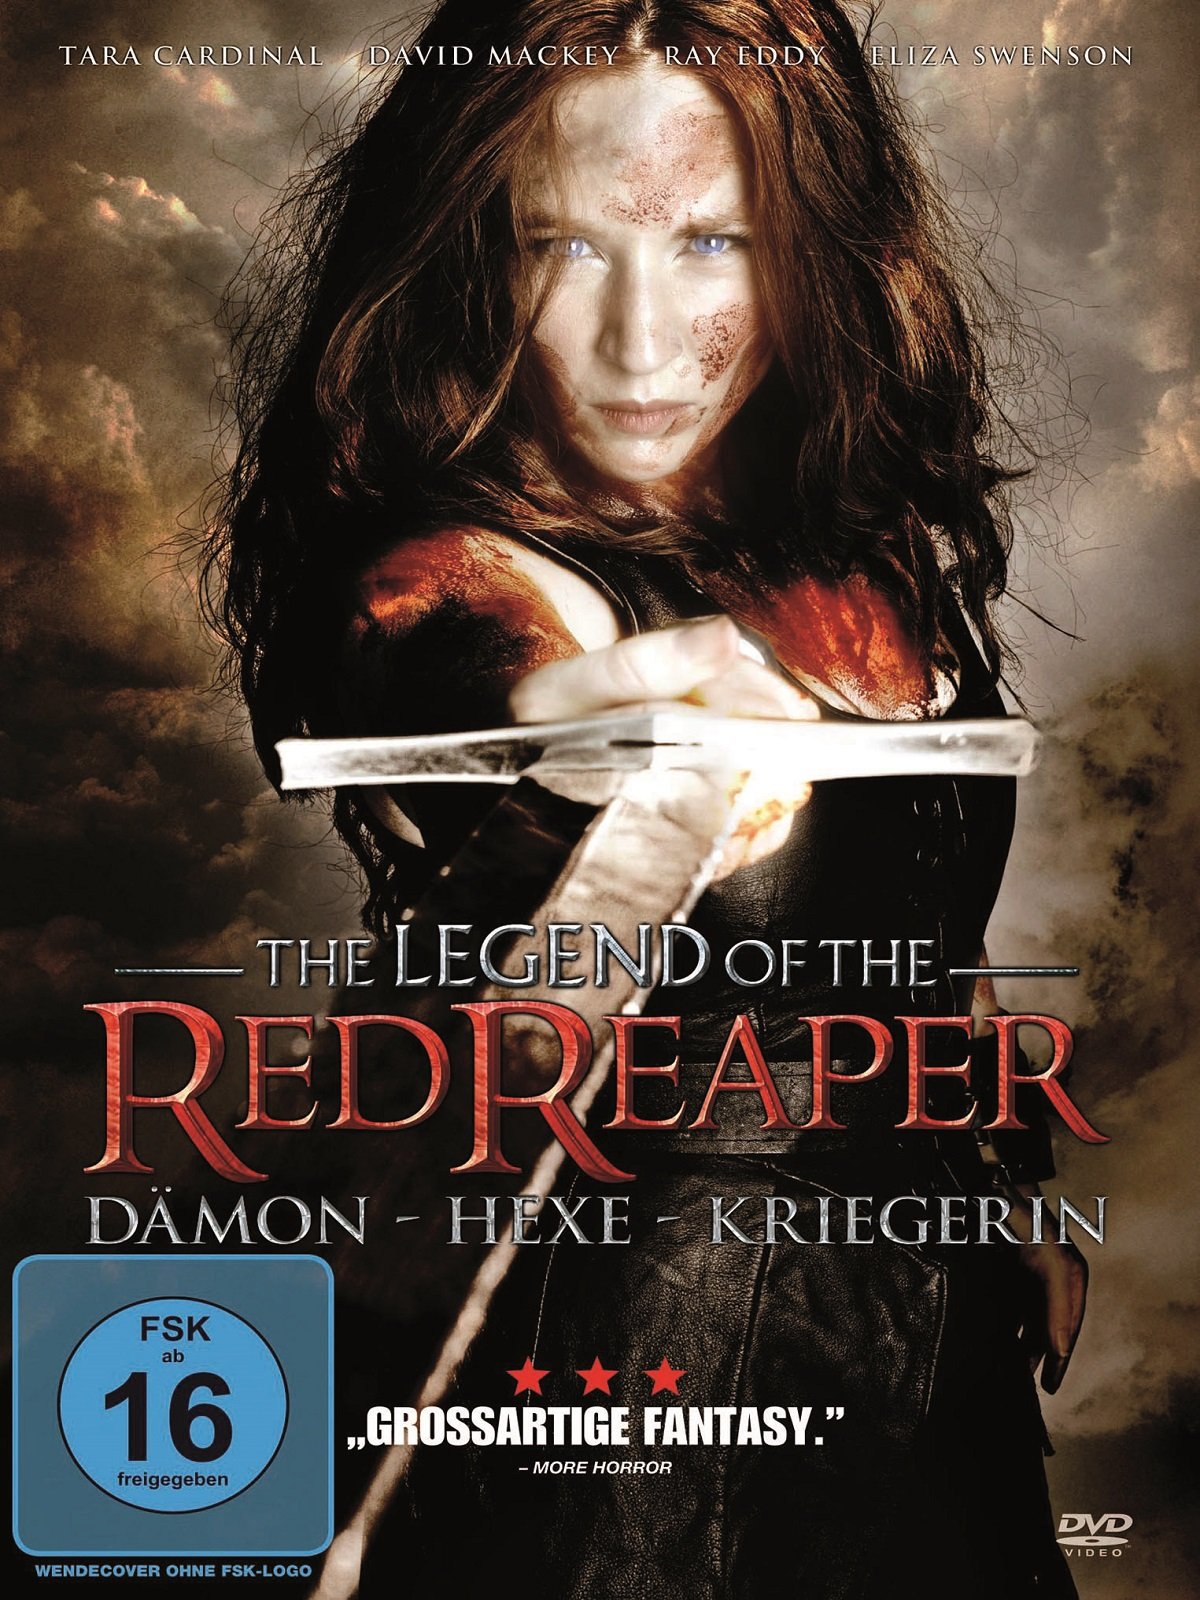 The Legend of the Red Reaper Dämon, Hexe, Kriegerin